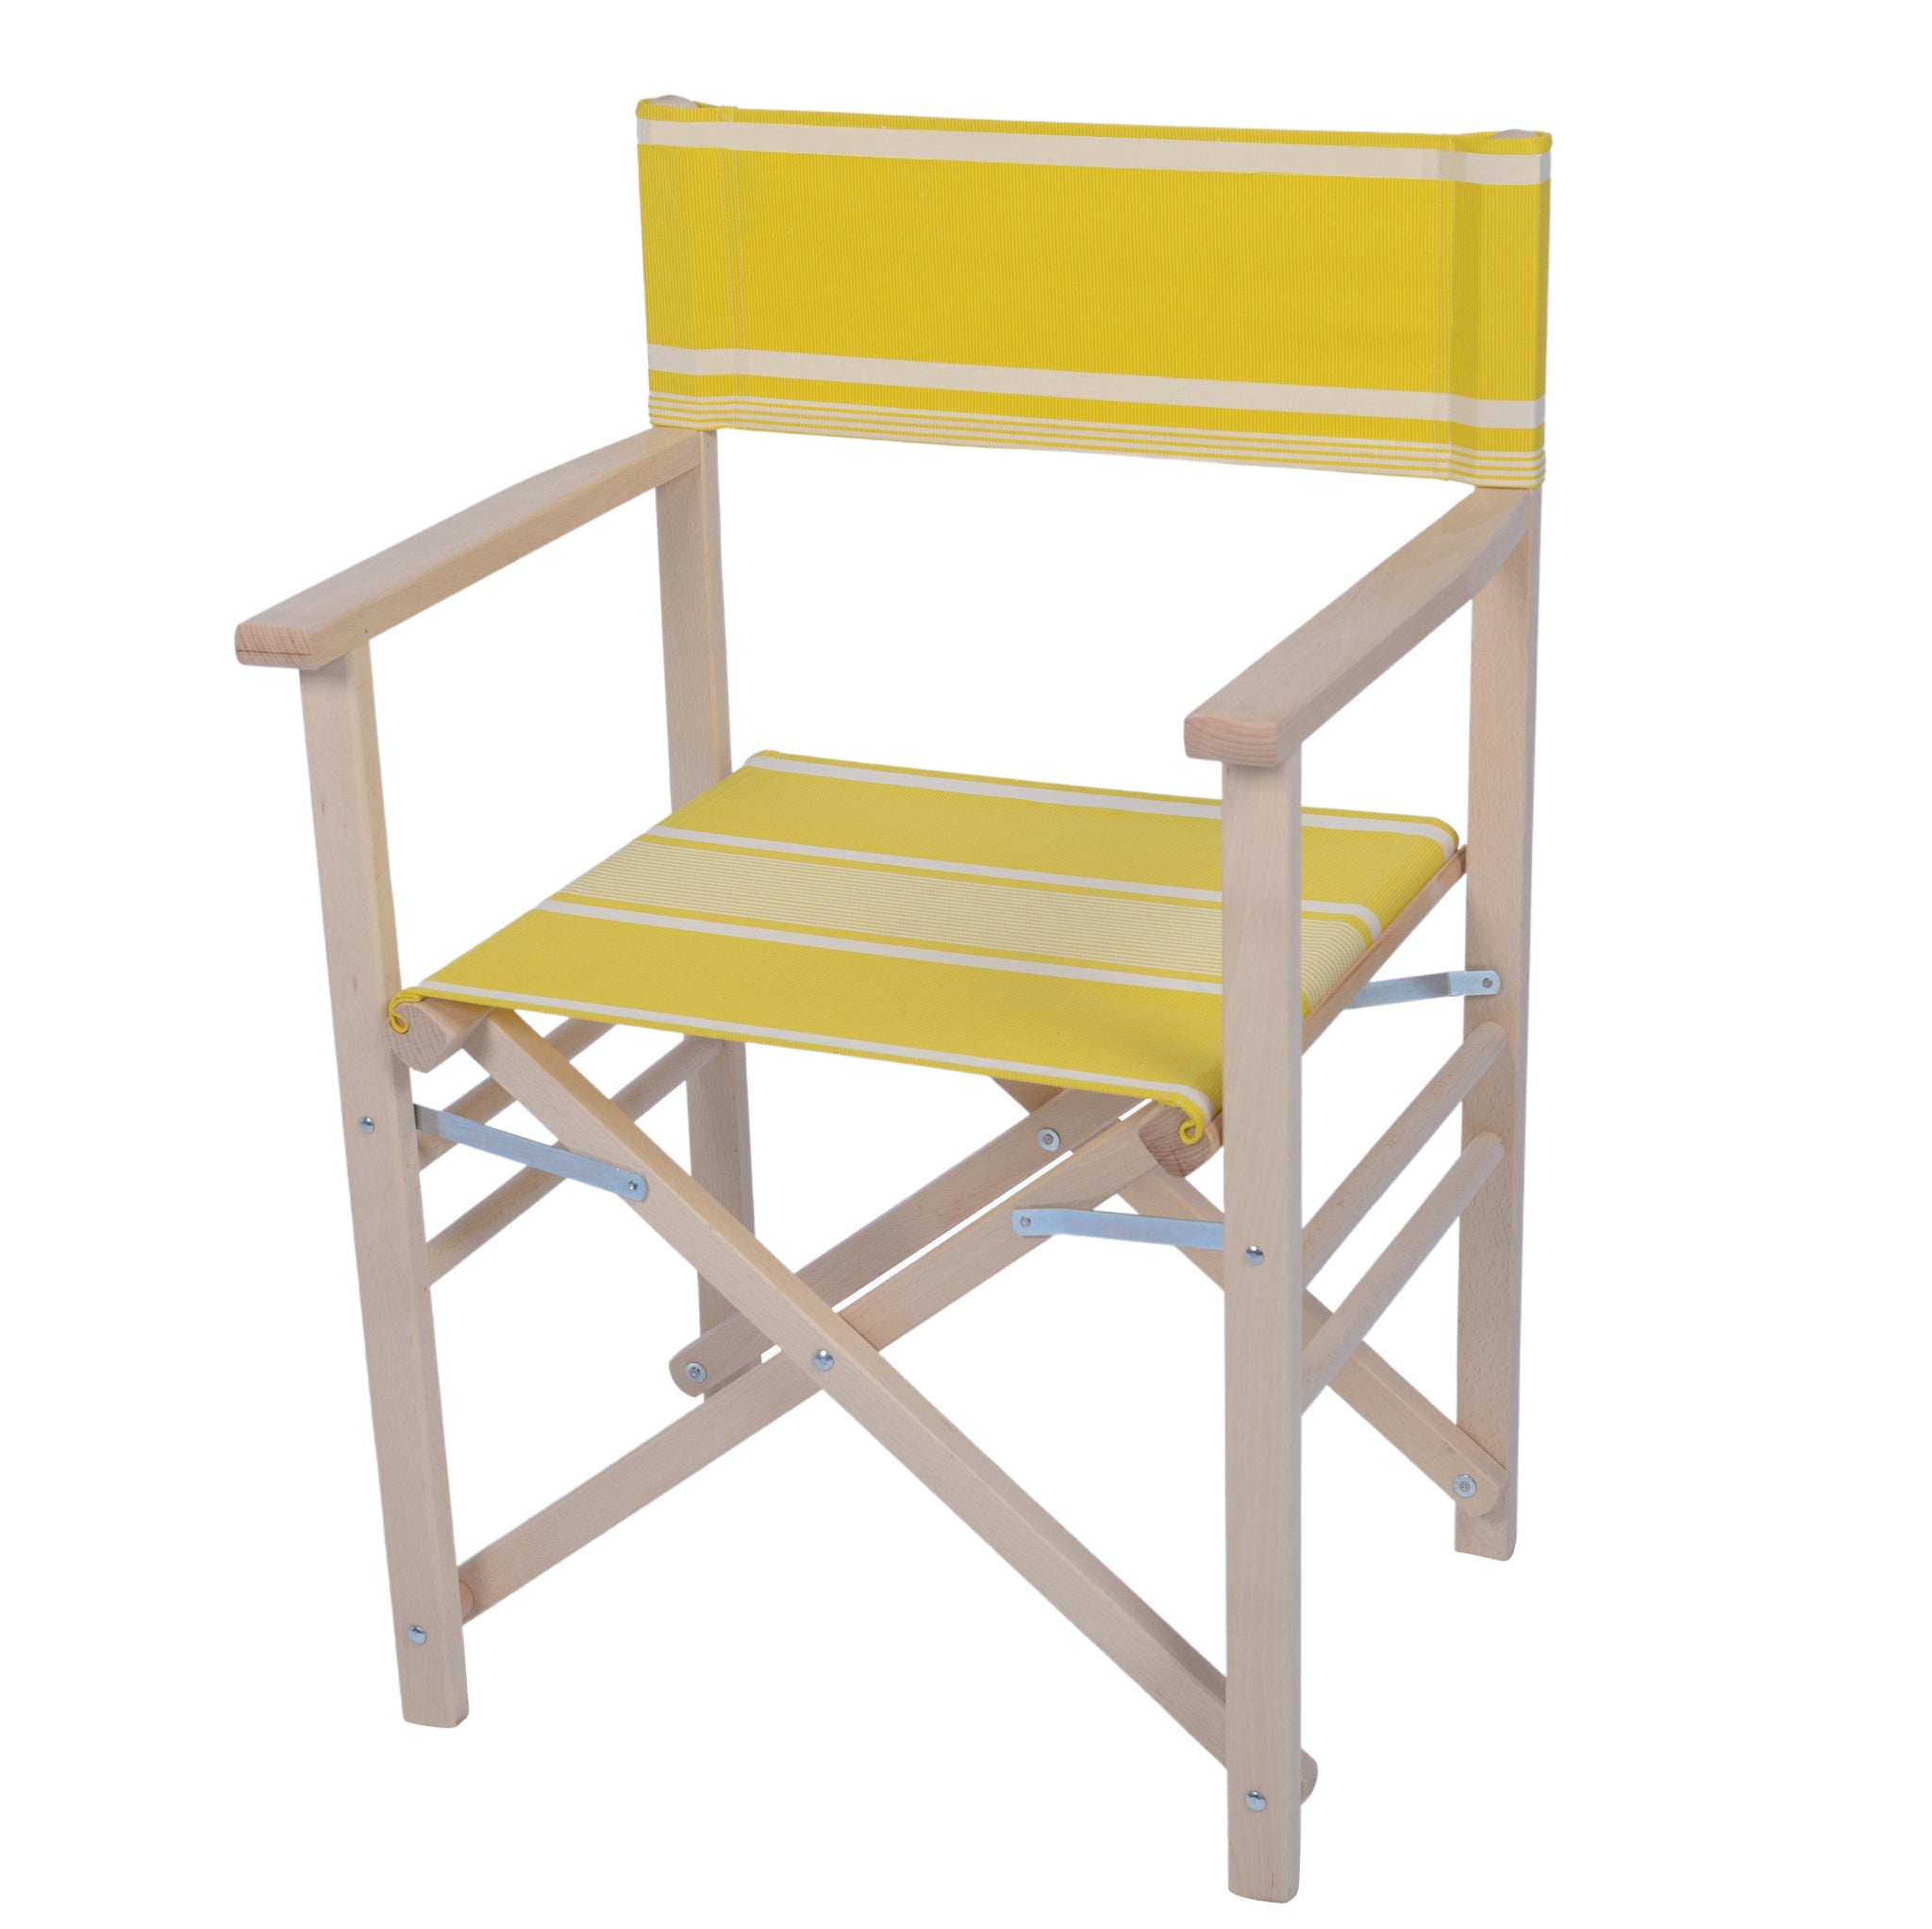 Polijsten Lijkt op Mammoet houten regiestoel met geel witte canvas bekleding - kleurmeester.nl –  Kleurmeester.nl